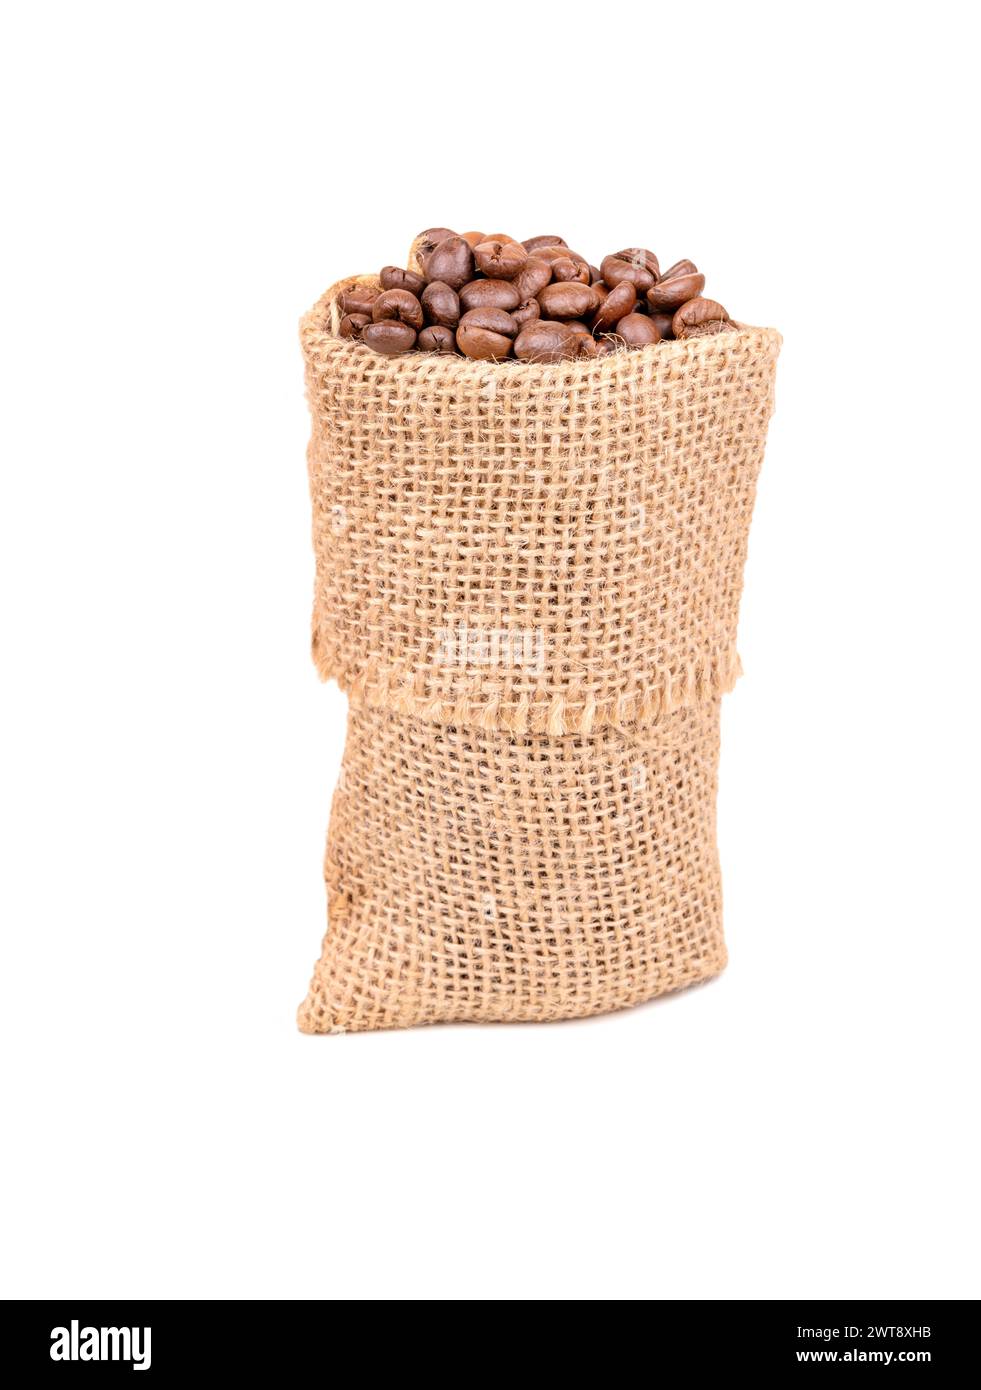 Kleiner Sackleinen-Beutel mit gerösteten Arabica-Kaffeebohnen isoliert auf weißem Hintergrund Stockfoto